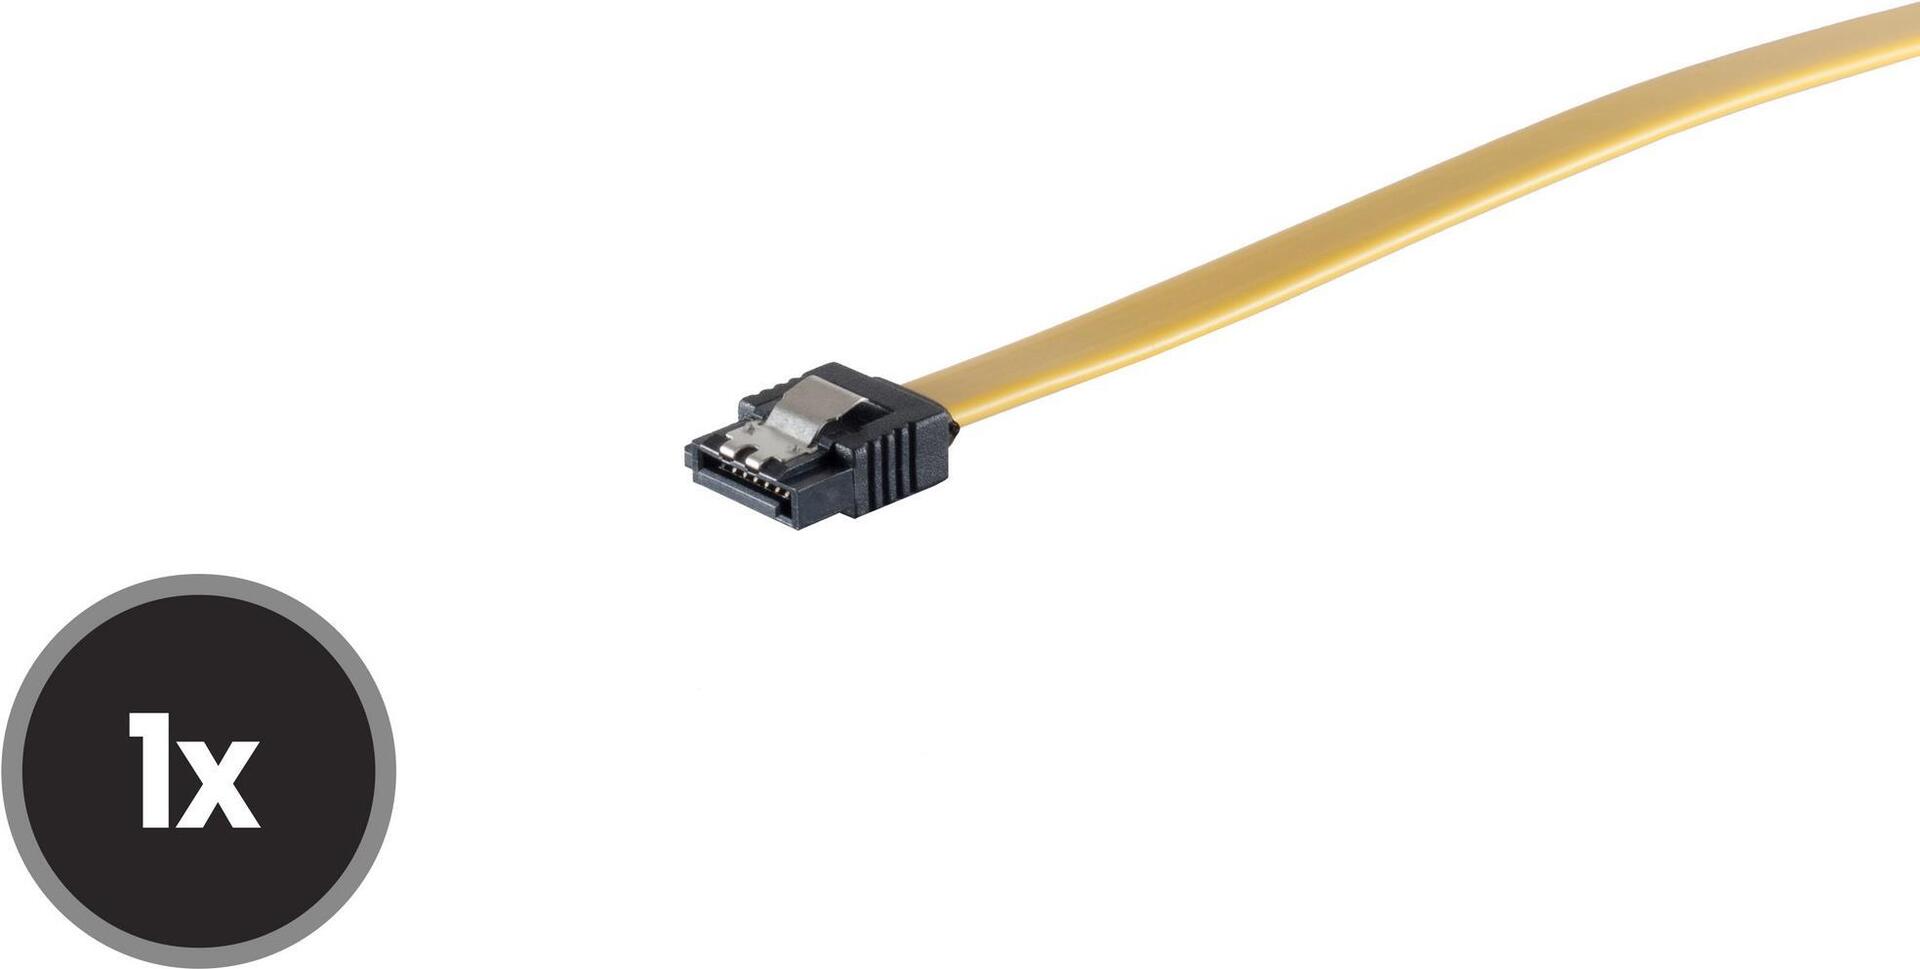 SCO 78246-0.5Y Seriell-ATA Kabel 50cm gerade Metallfeder (78246-0.5Y)